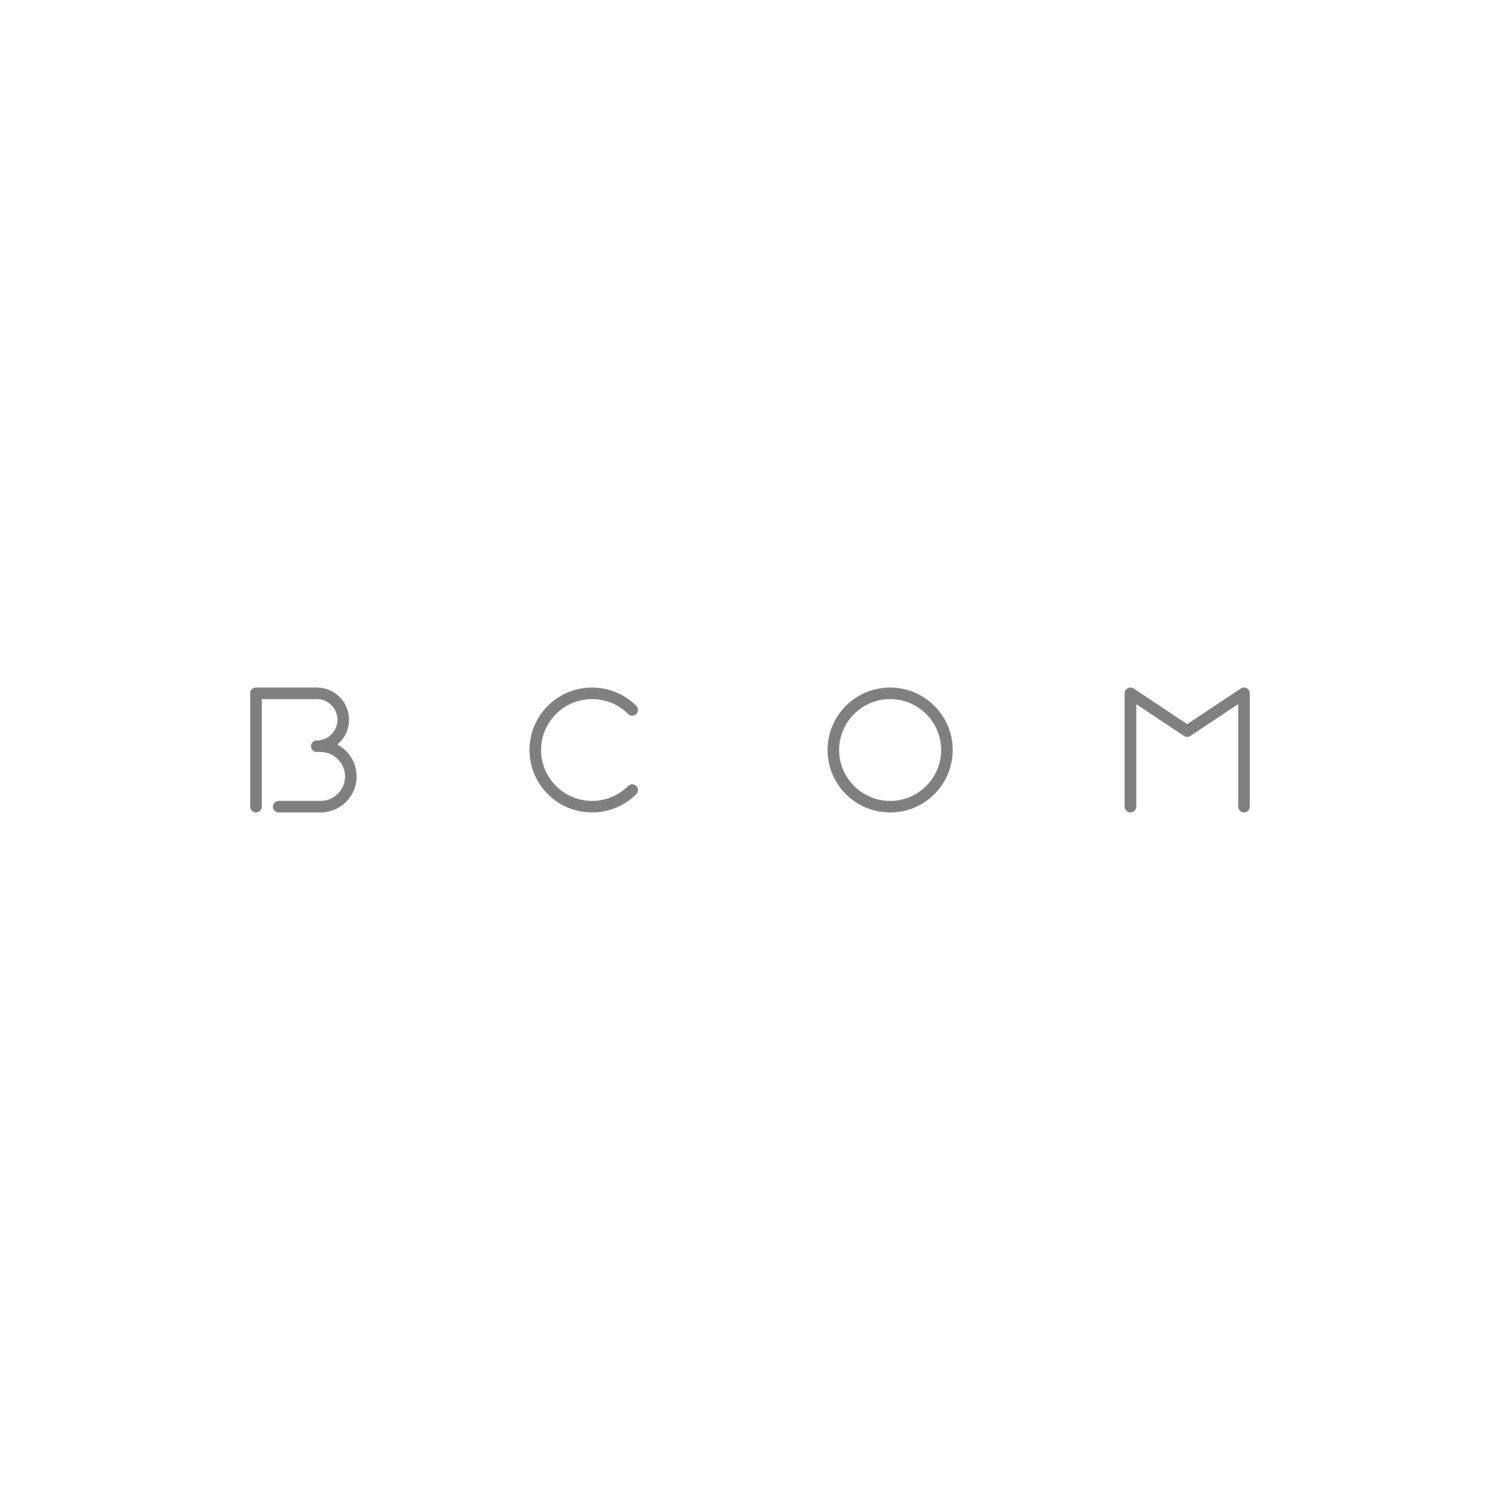 BCOM logo